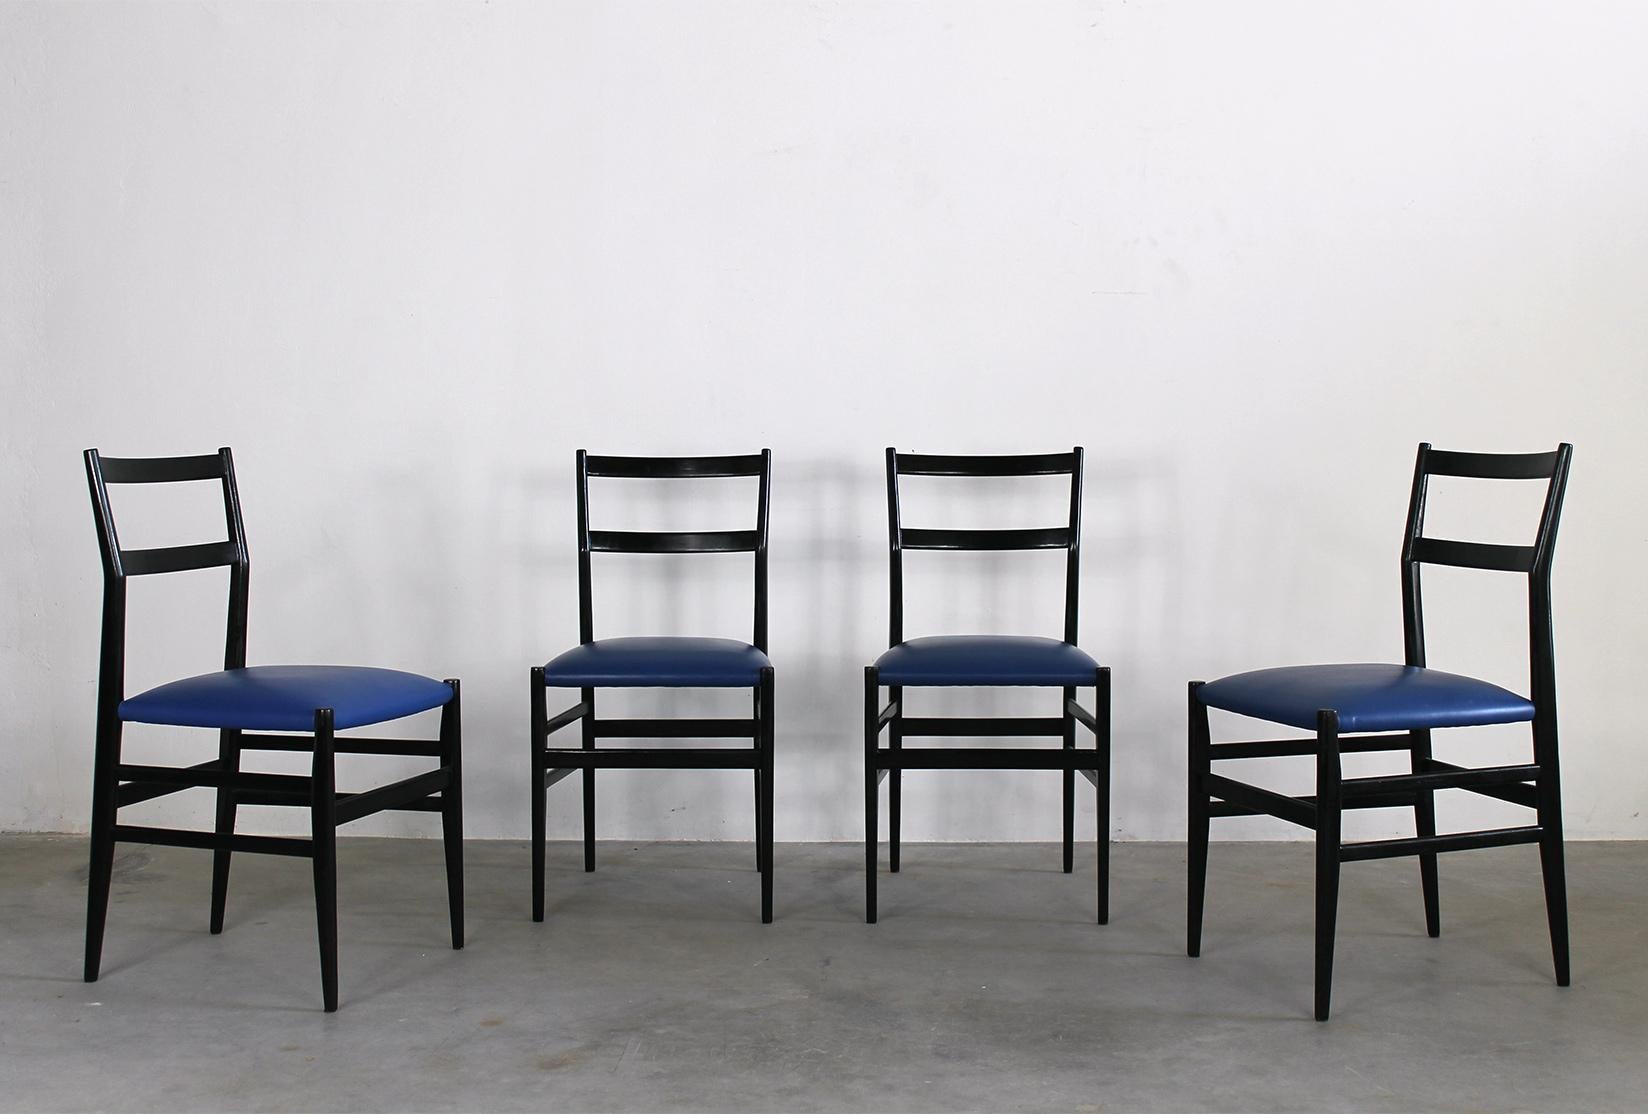 Satz von vier Leggera Esszimmerstühlen mit Struktur aus schwarz lackiertem Holz und Sitz aus gepolstertem blauem Kunstleder, entworfen von Gio Ponti und hergestellt von Cassina im Jahr 1951.

Leggera ist ein schlichter Stuhl mit einer höflichen,